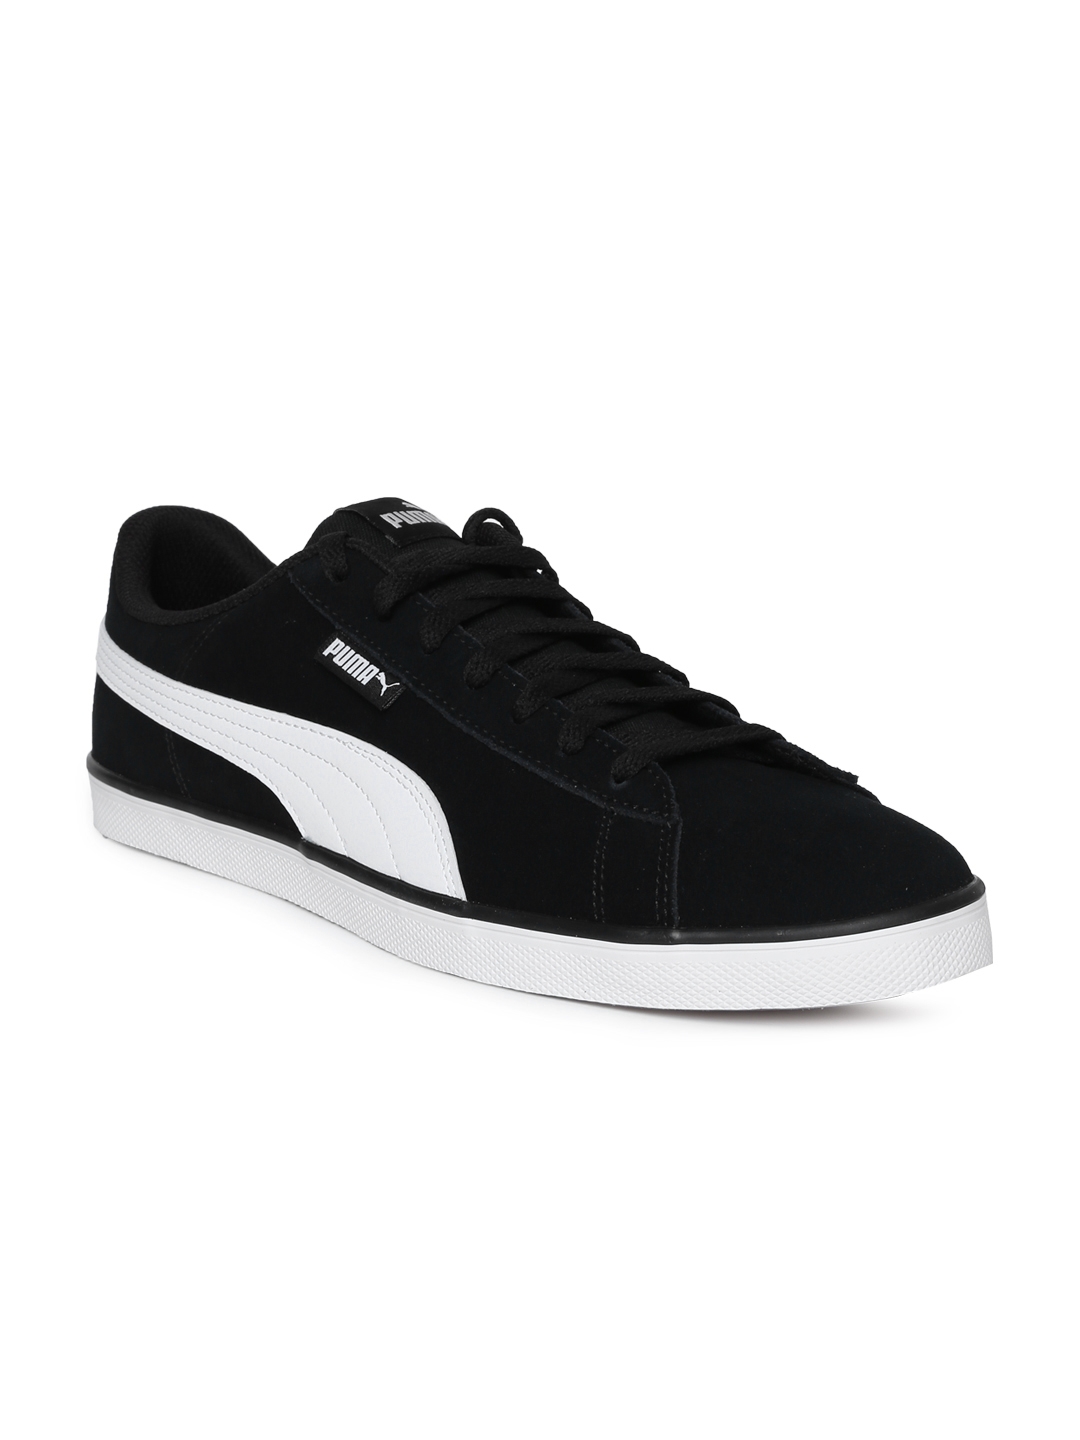 Aparador Accidental necesario Buy Puma Men Black Urban Plus Suede Sneakers - Casual Shoes for Men 2454549  | Myntra